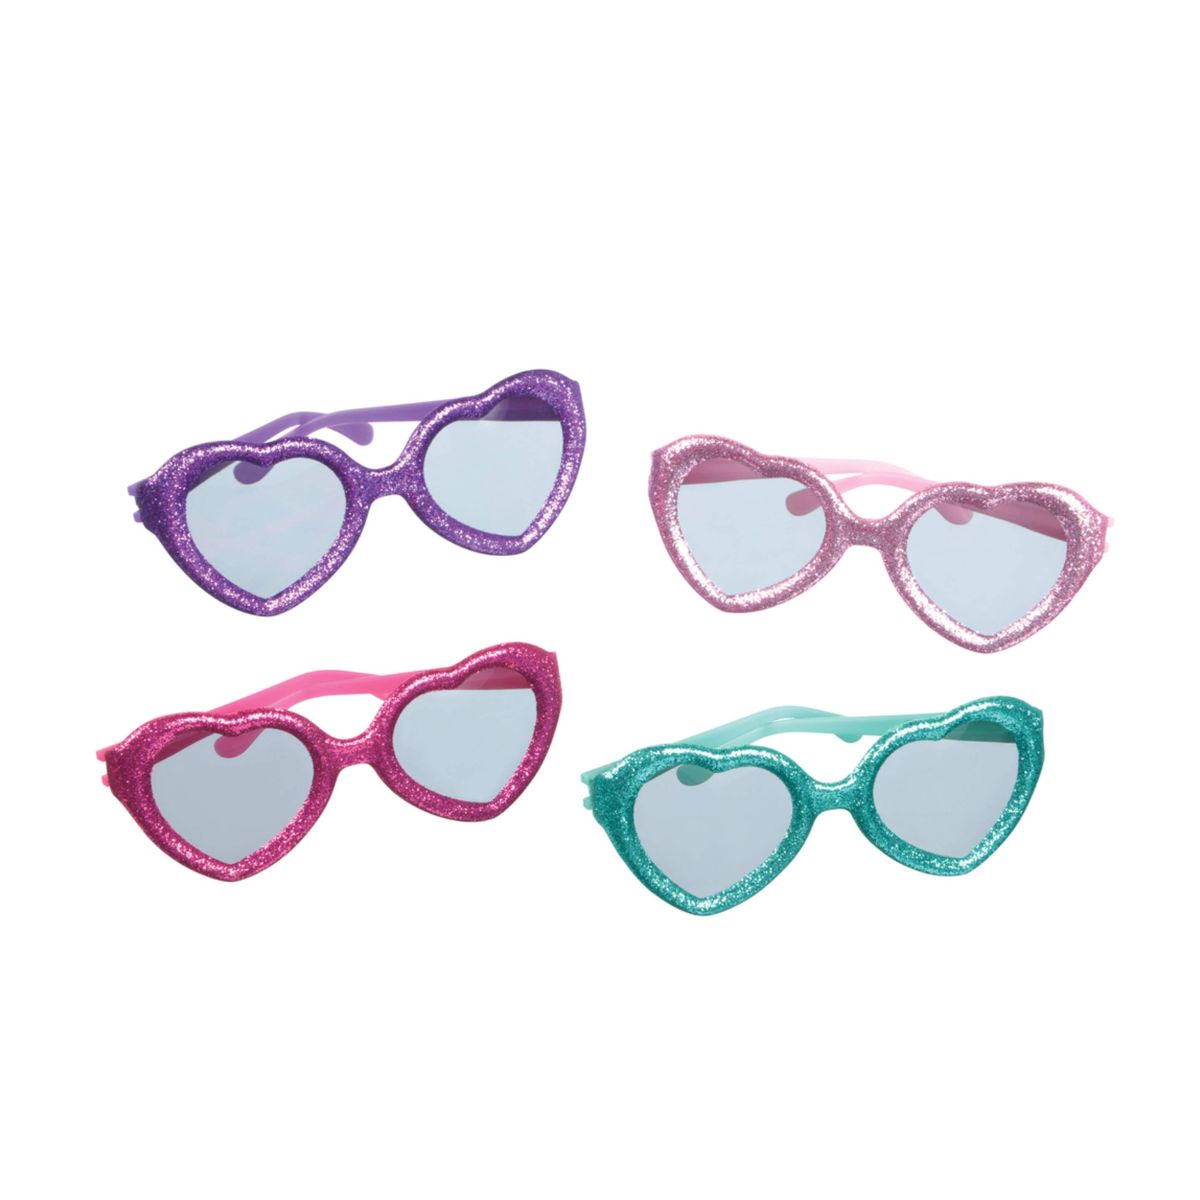 Glitter Glasses Value Pack Favor